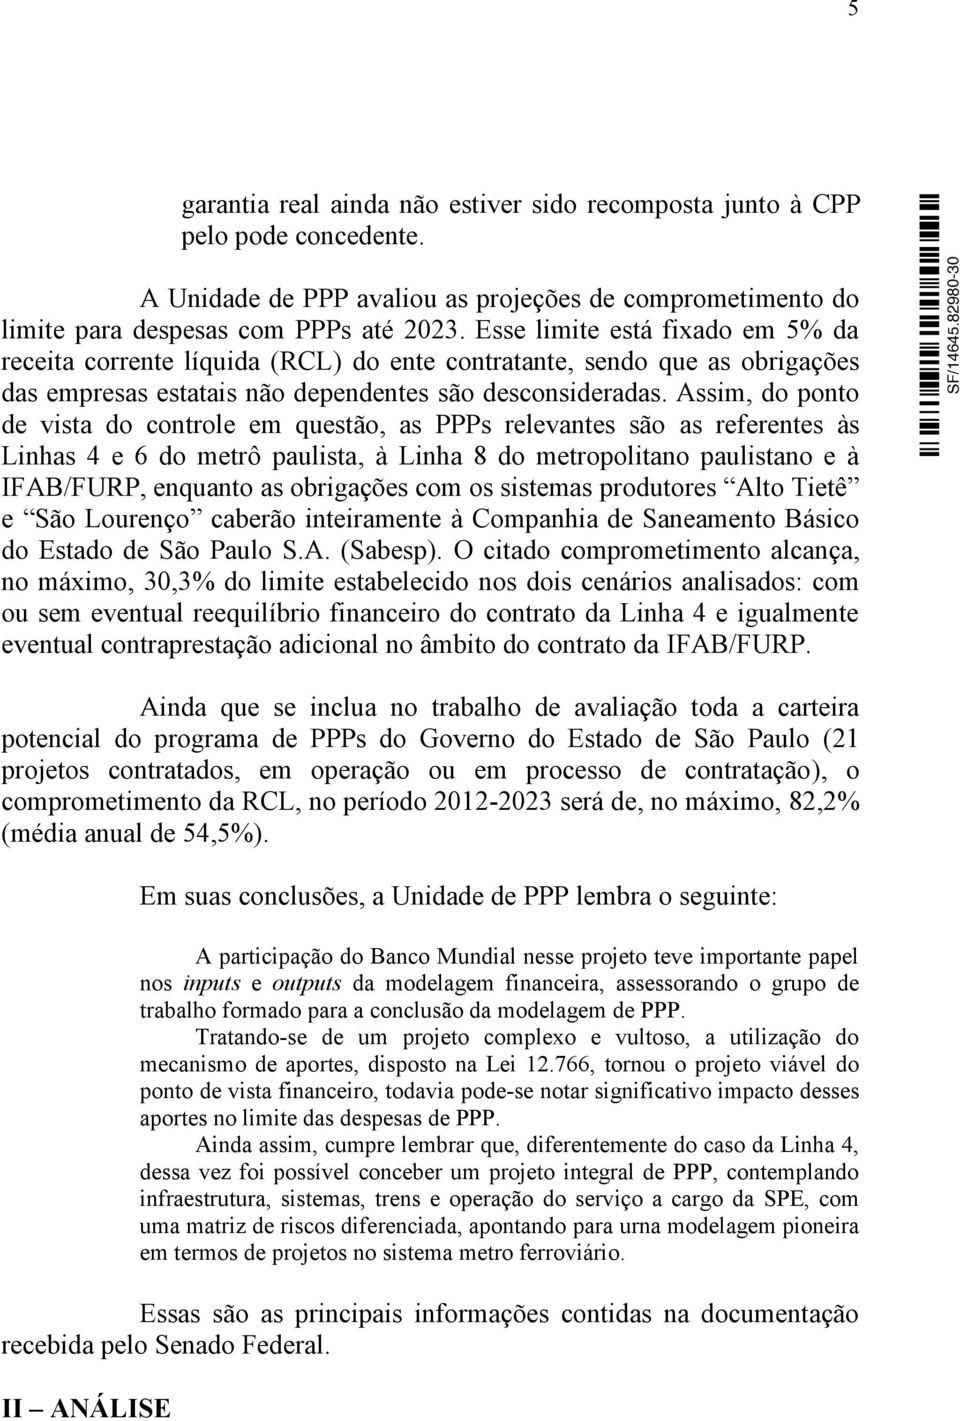 Assim, do ponto de vista do controle em questão, as PPPs relevantes são as referentes às Linhas 4 e 6 do metrô paulista, à Linha 8 do metropolitano paulistano e à IFAB/FURP, enquanto as obrigações